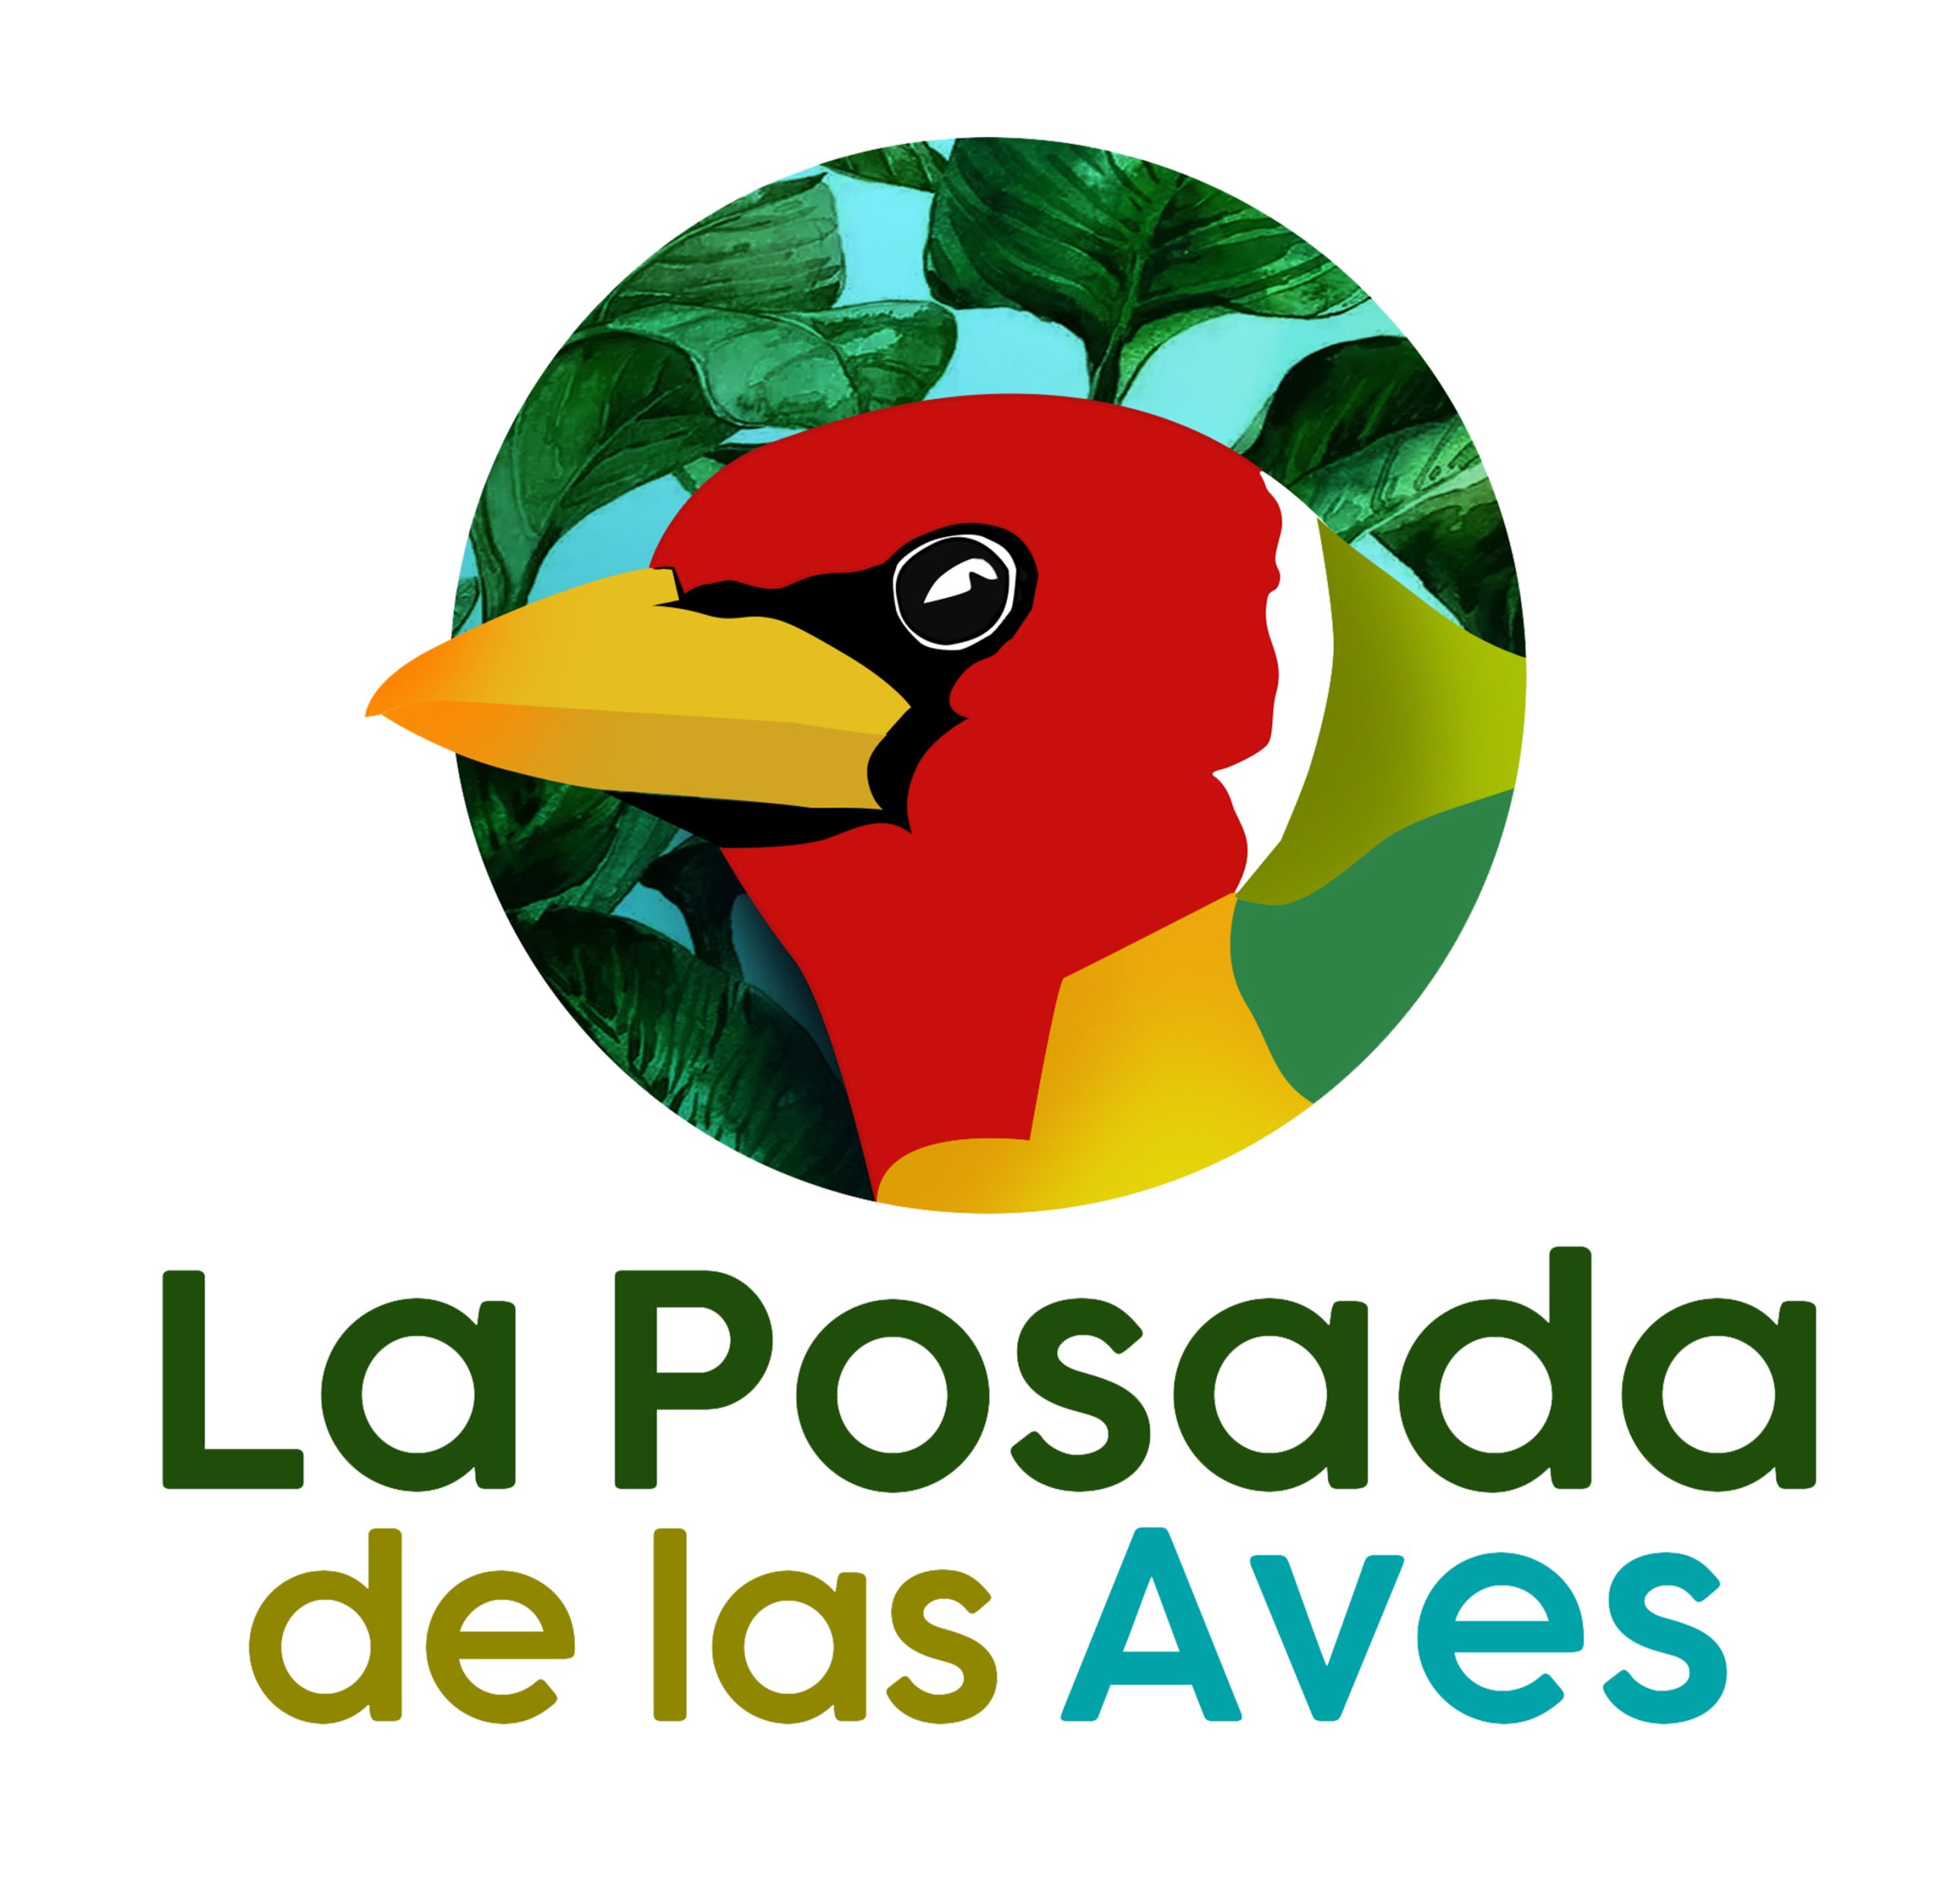 La Posada de las Aves - LOGO - San Rafael Antioquia